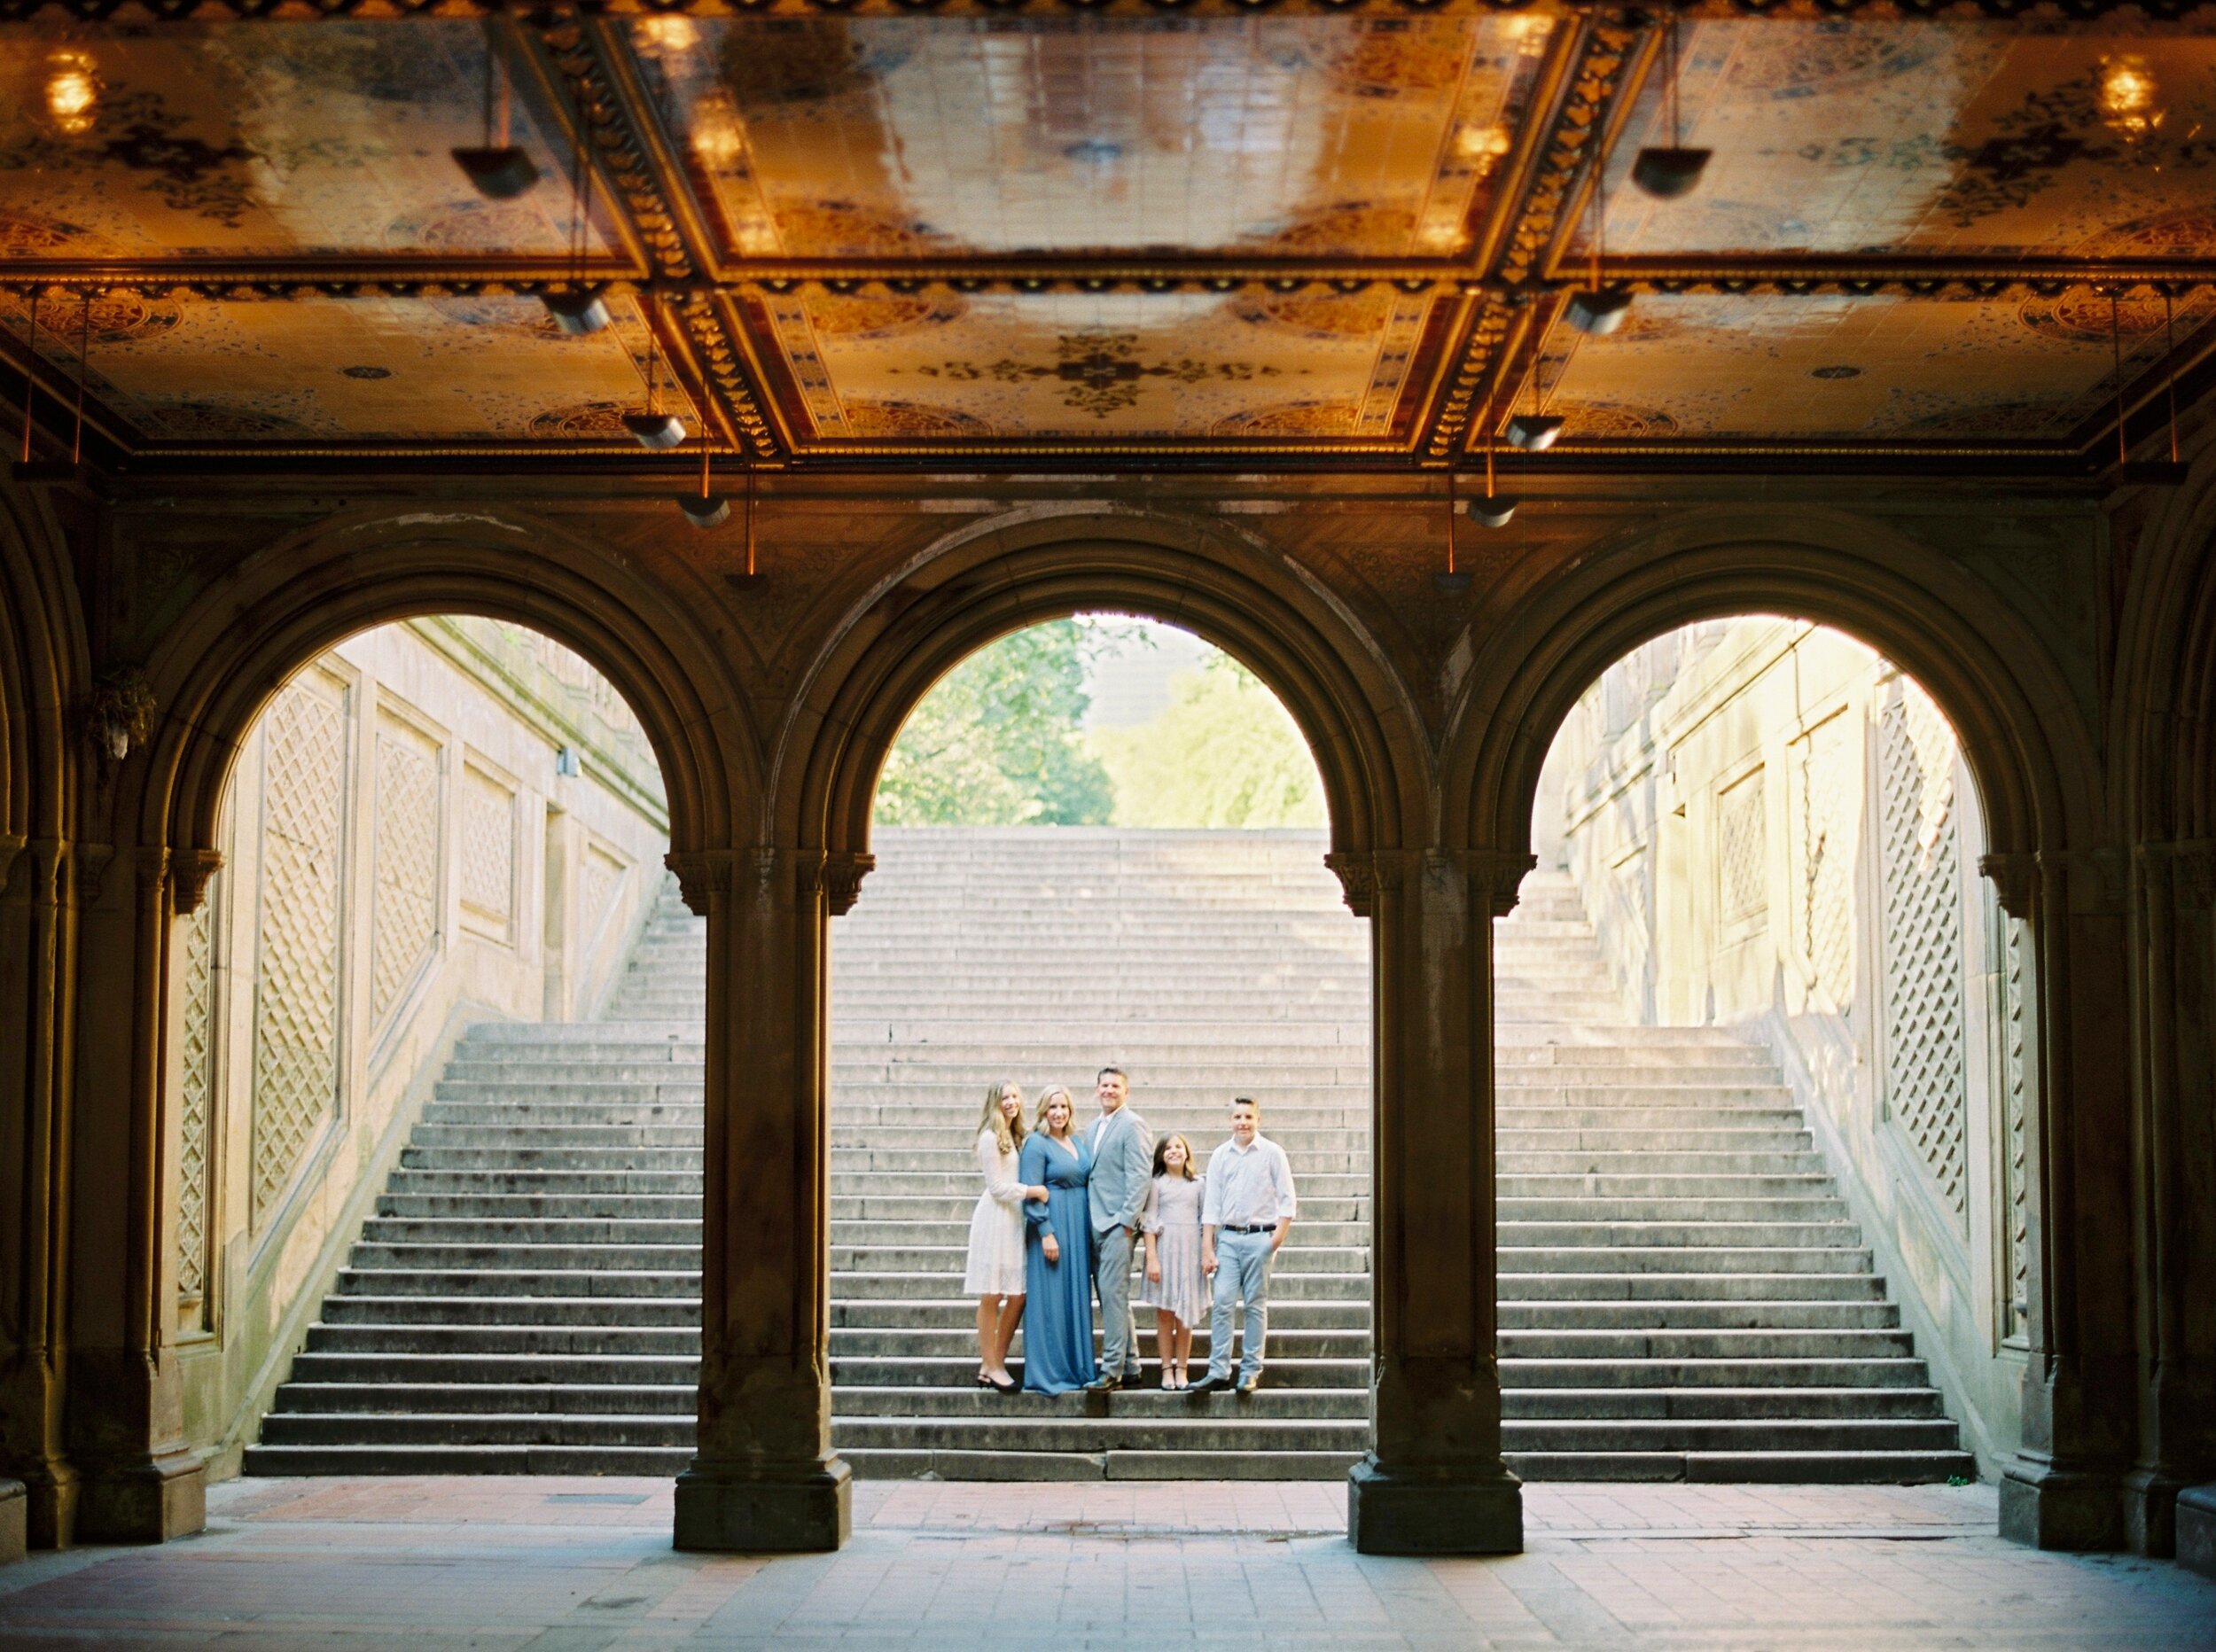 Ney York City Central Park Family Photos